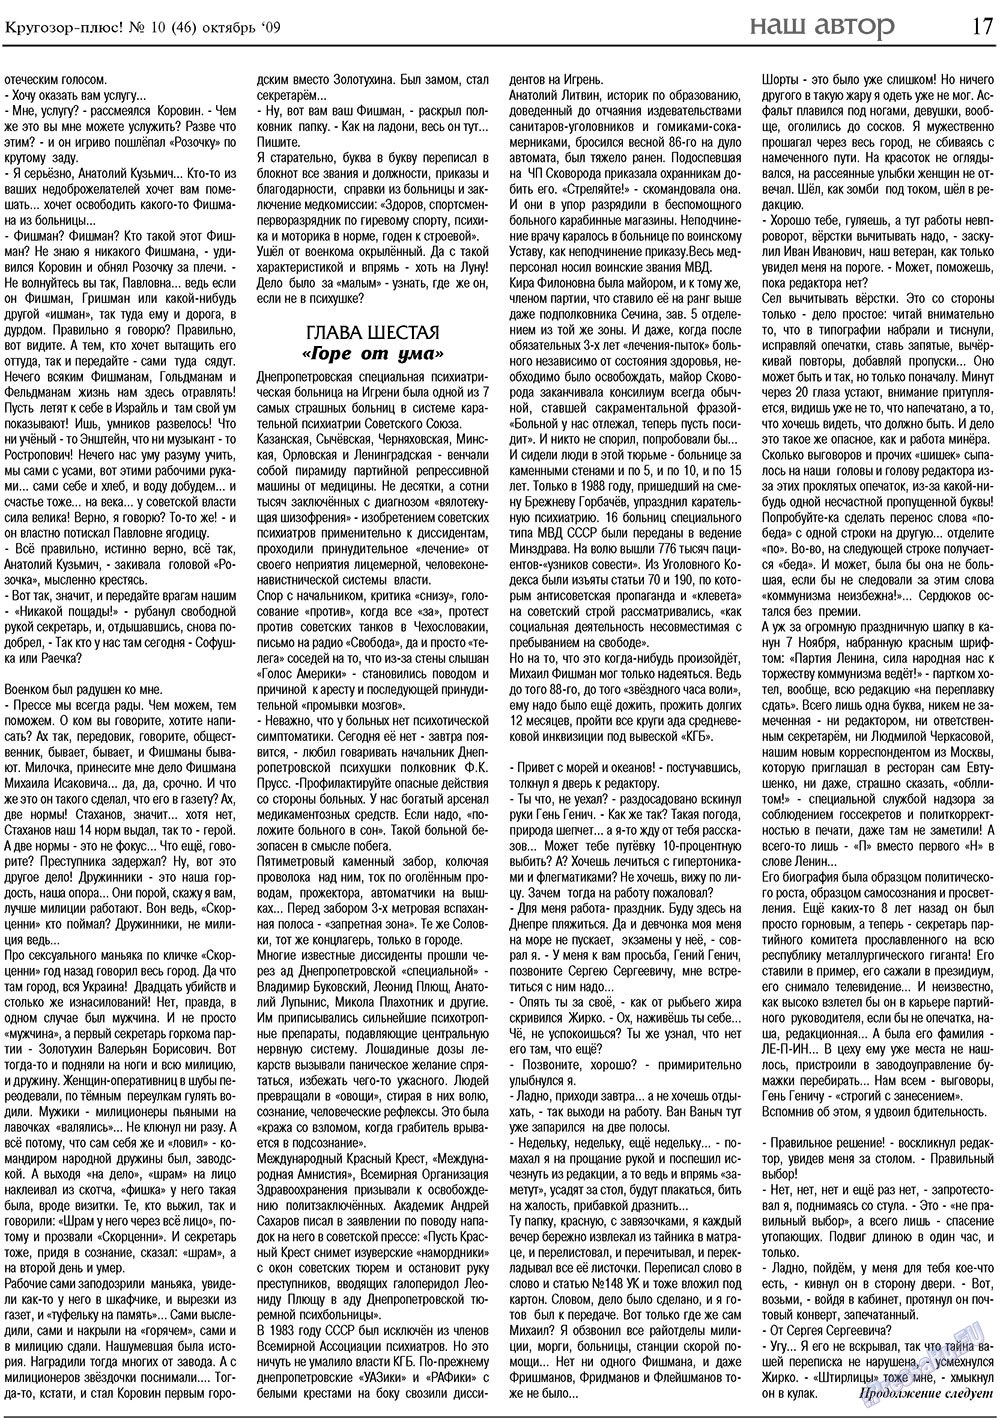 Кругозор плюс!, газета. 2009 №10 стр.17